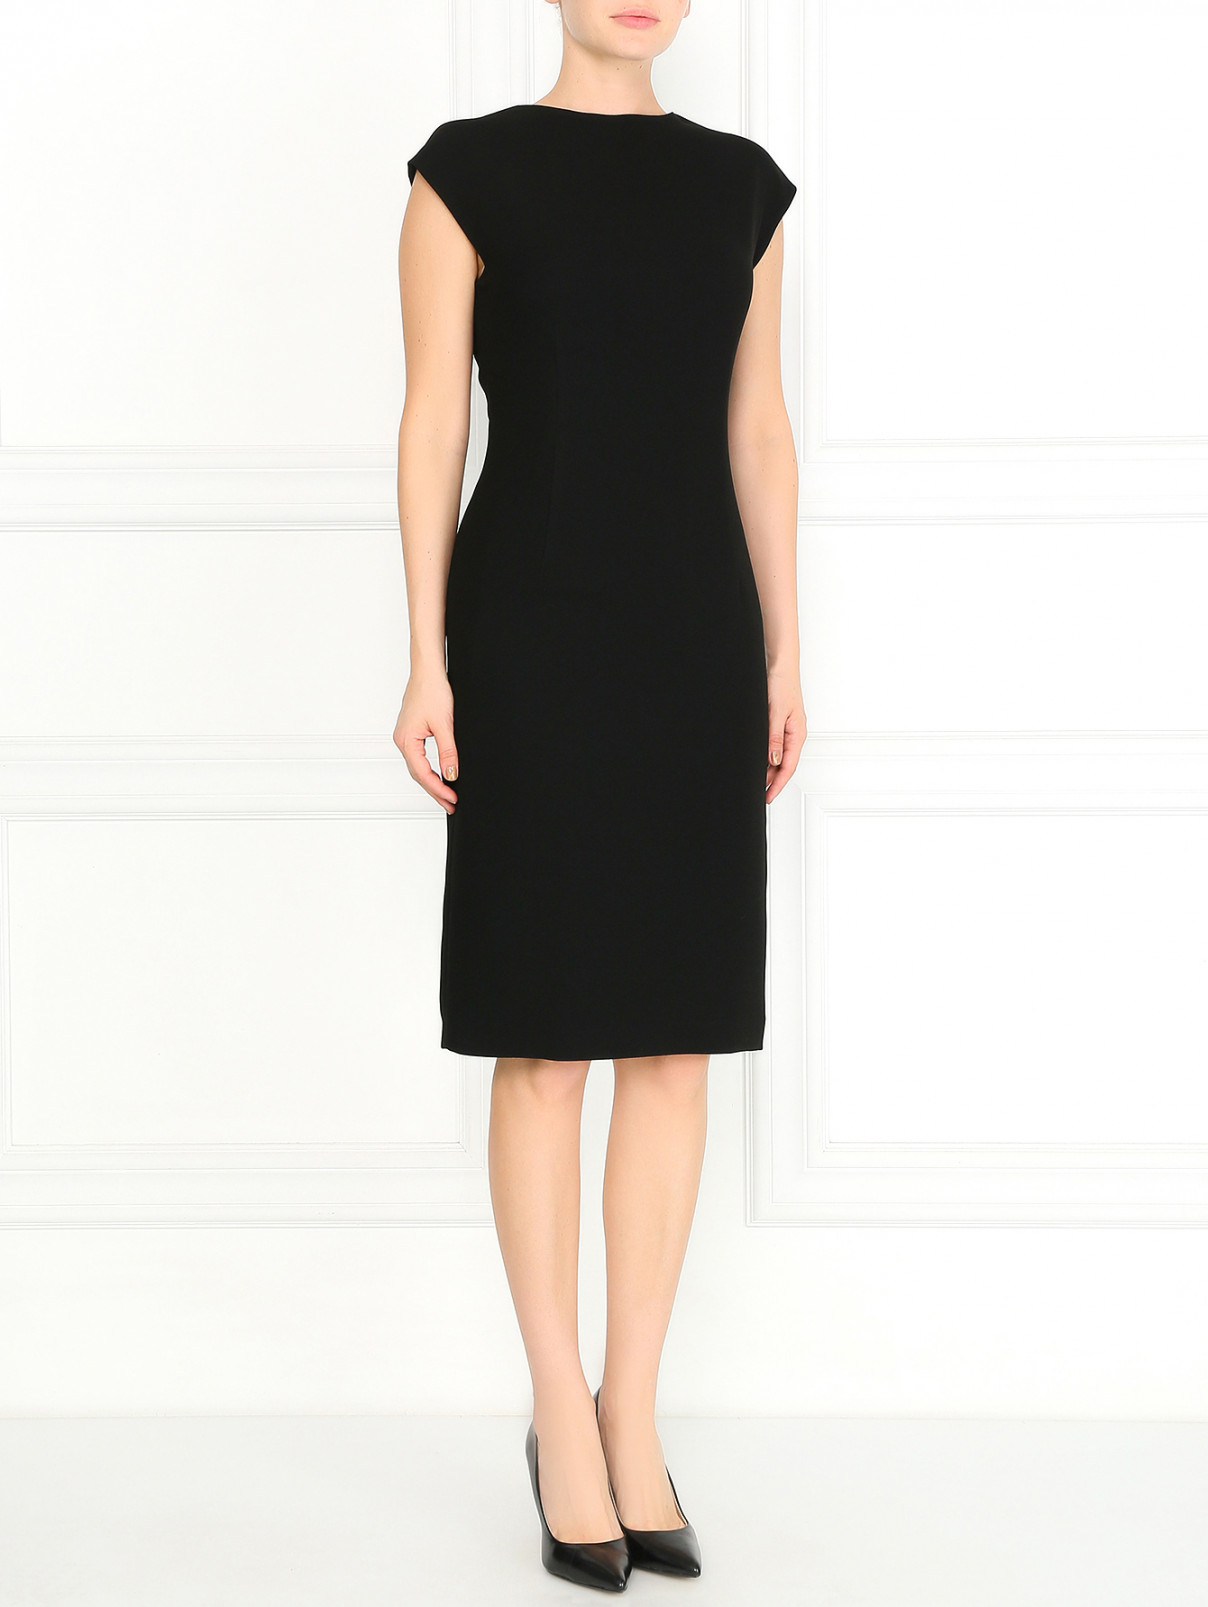 Платье-футляр Jean Paul Gaultier  –  Модель Общий вид  – Цвет:  Черный